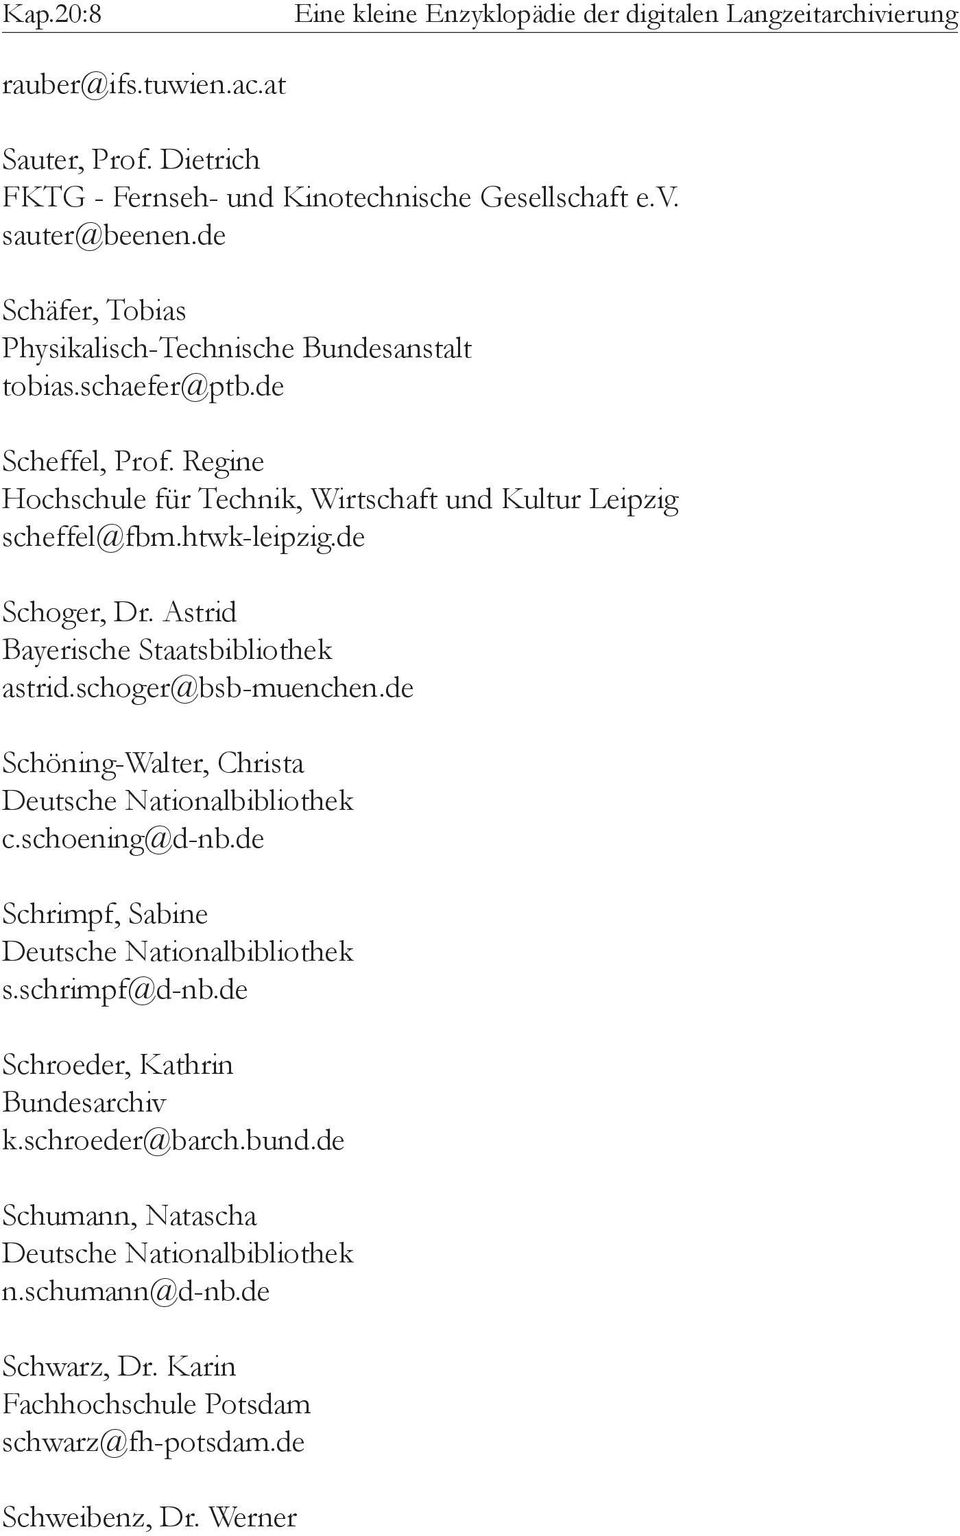 htwk-leipzig.de Schoger, Dr. Astrid Bayerische Staatsbibliothek astrid.schoger@bsb-muenchen.de Schöning-Walter, Christa c.schoening@d-nb.de Schrimpf, Sabine s.schrimpf@d-nb.